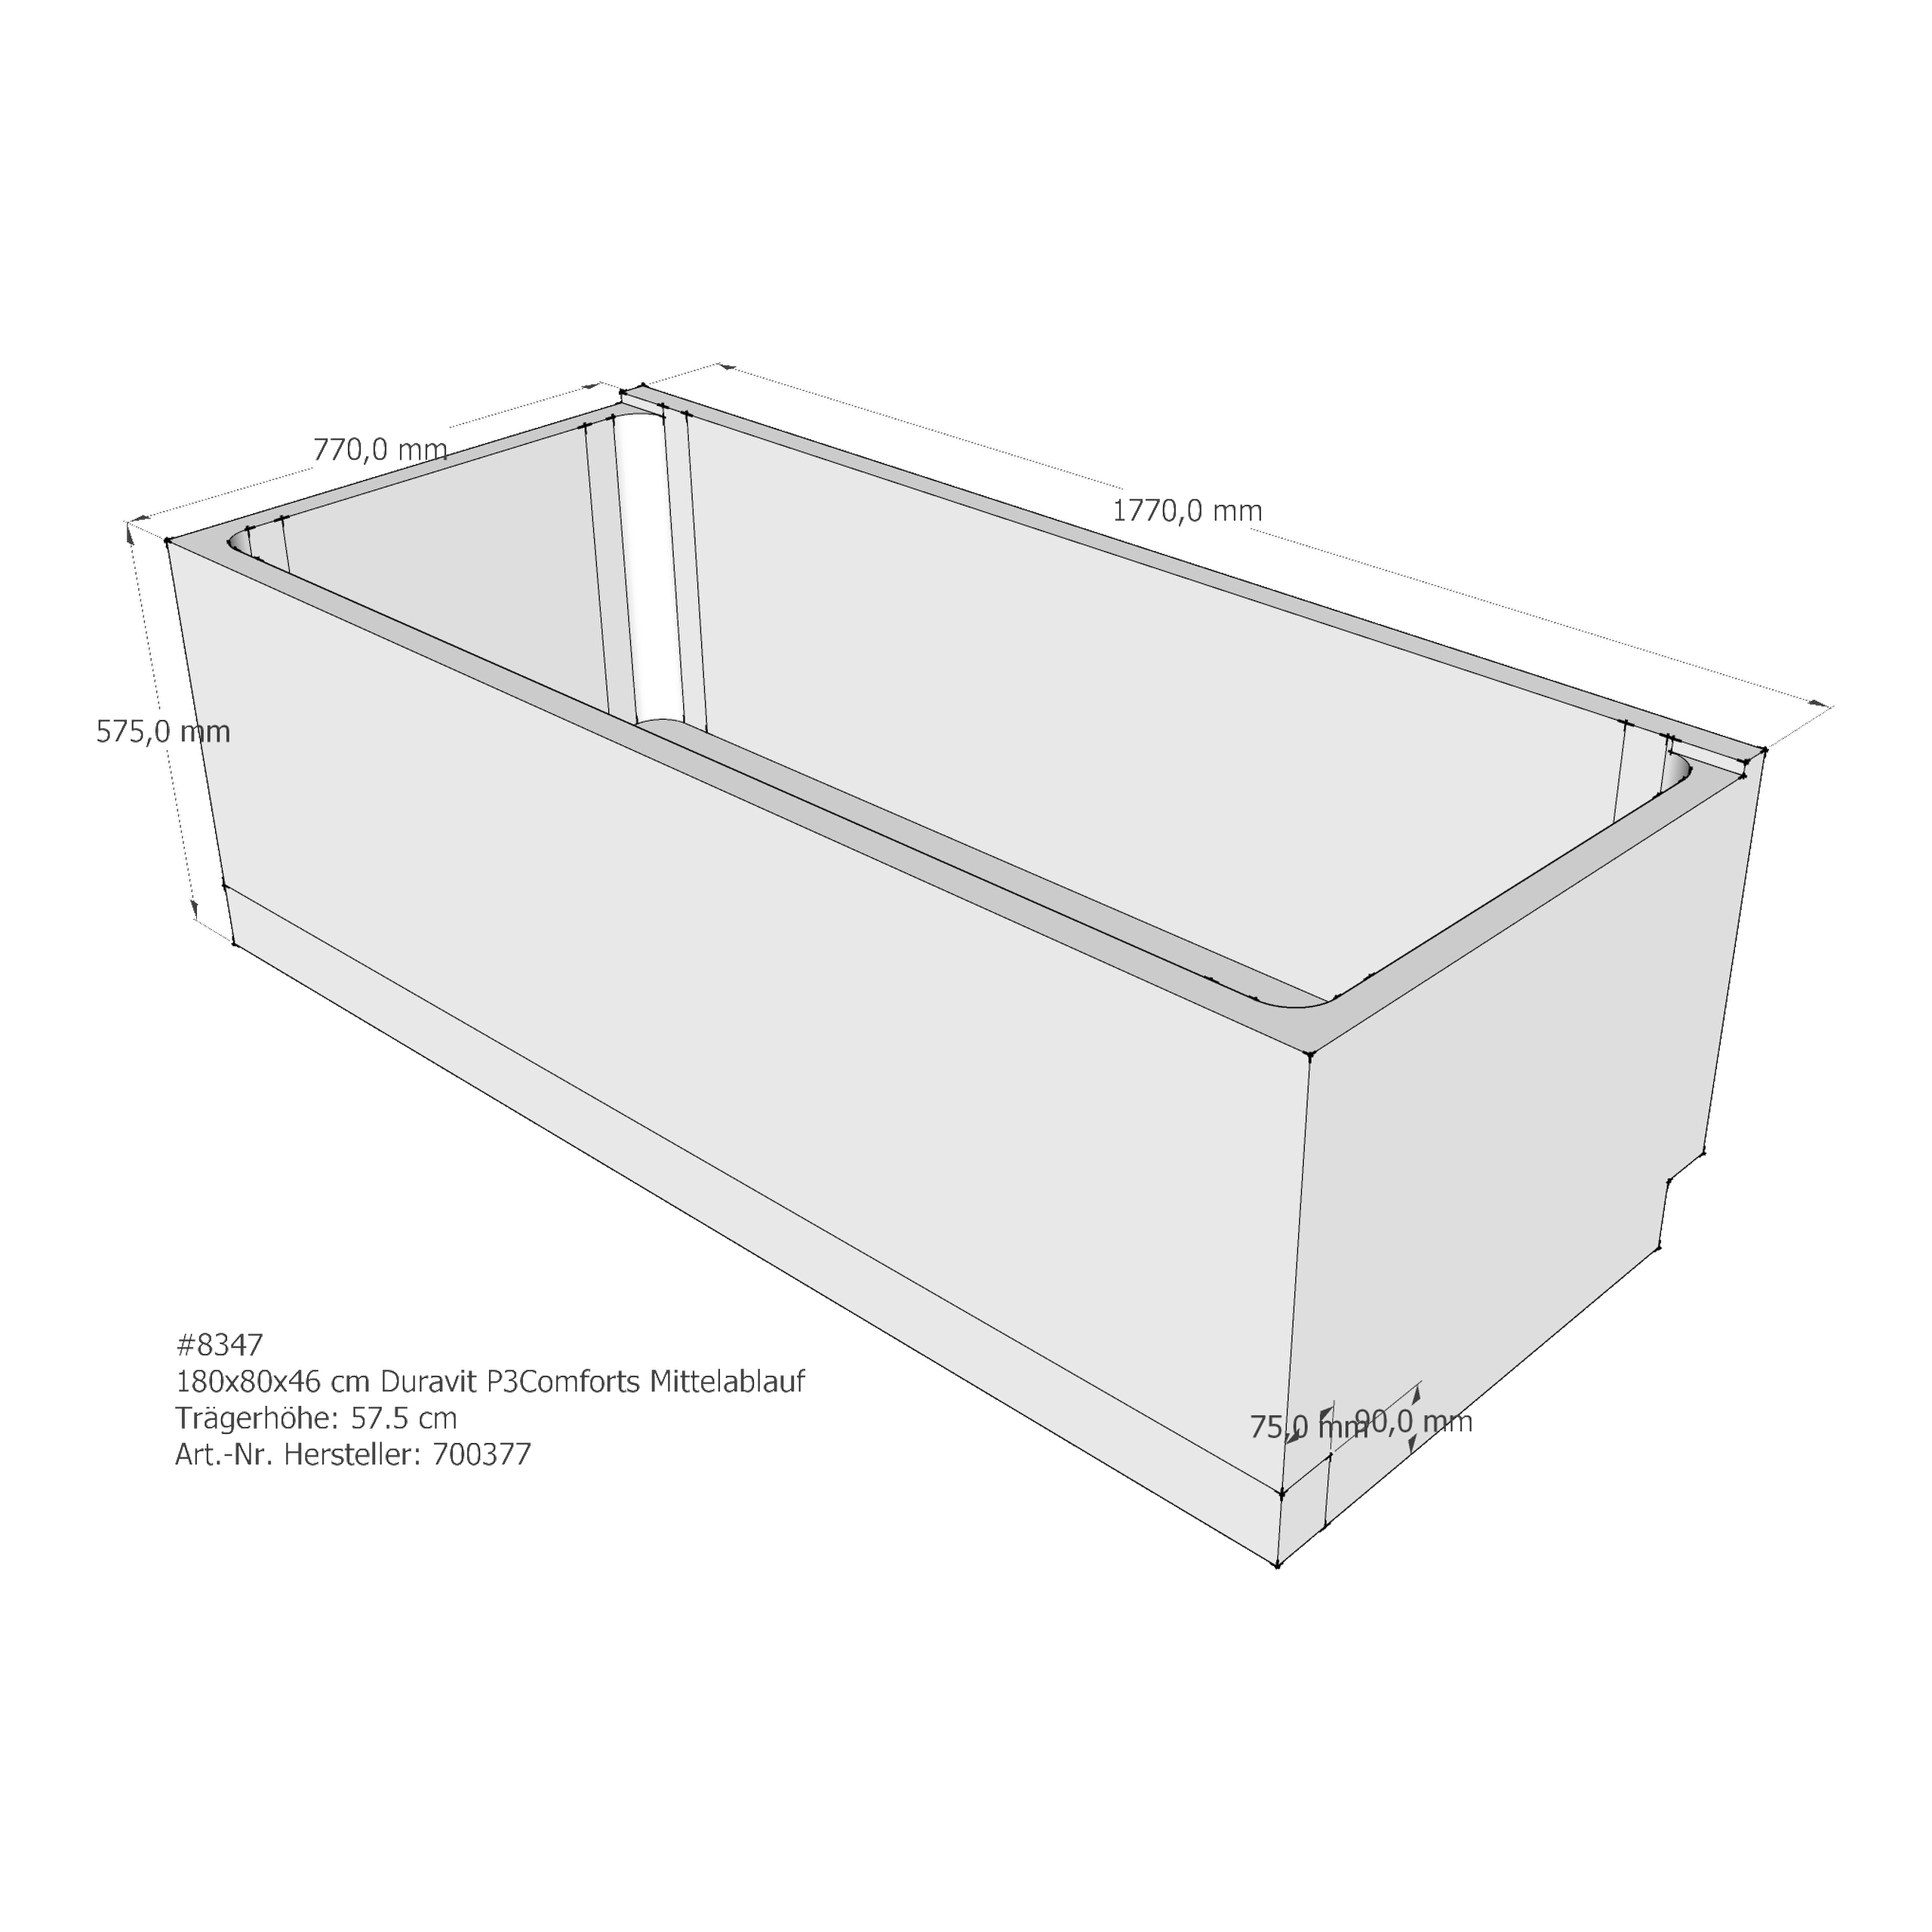 Badewannenträger für Duravit P3 Comforts 180 × 80 × 46 cm